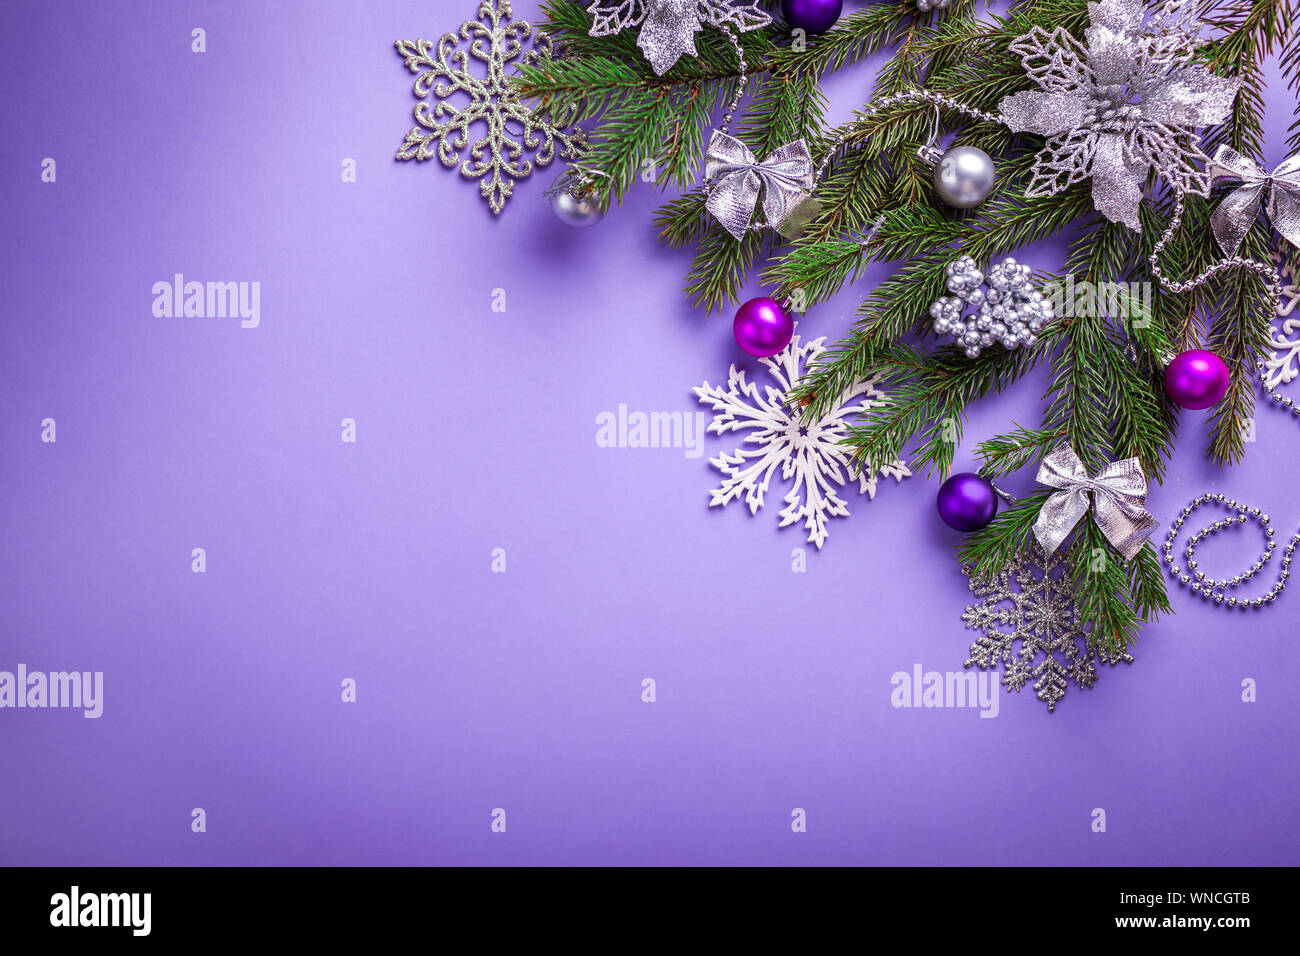 Bức hình nền Giáng Sinh màu tím rực rỡ này sẽ khiến bạn không khỏi thích thú. Thiết kế đầy phong cách, tươi sáng sẽ mang lại một không khí lễ hội ấm áp cho màn hình thiết bị của bạn.